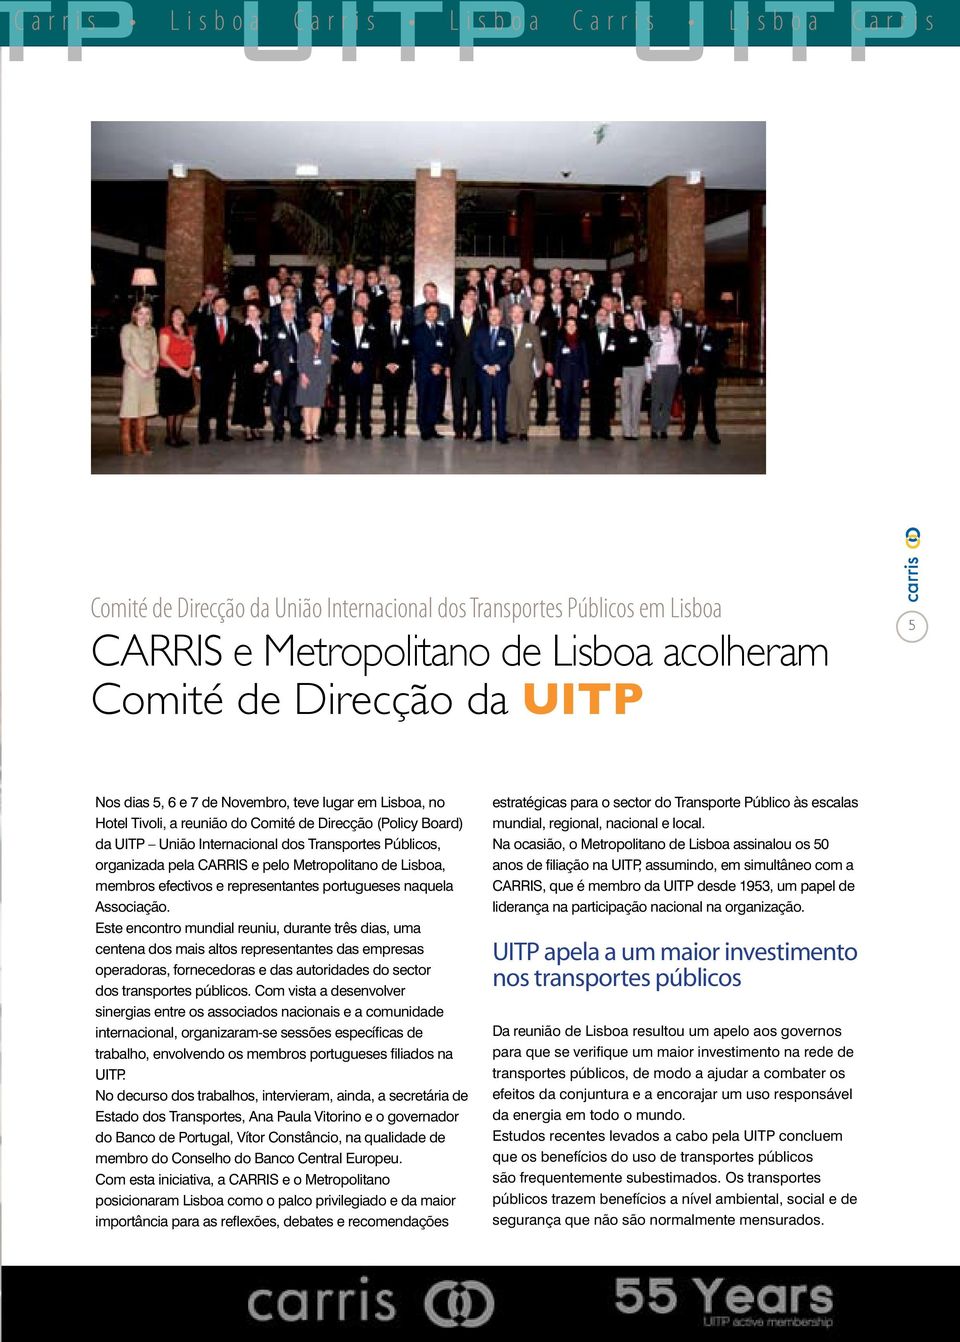 Transportes Públicos, organizada pela CARRIS e pelo Metropolitano de Lisboa, membros efectivos e representantes portugueses naquela Associação.